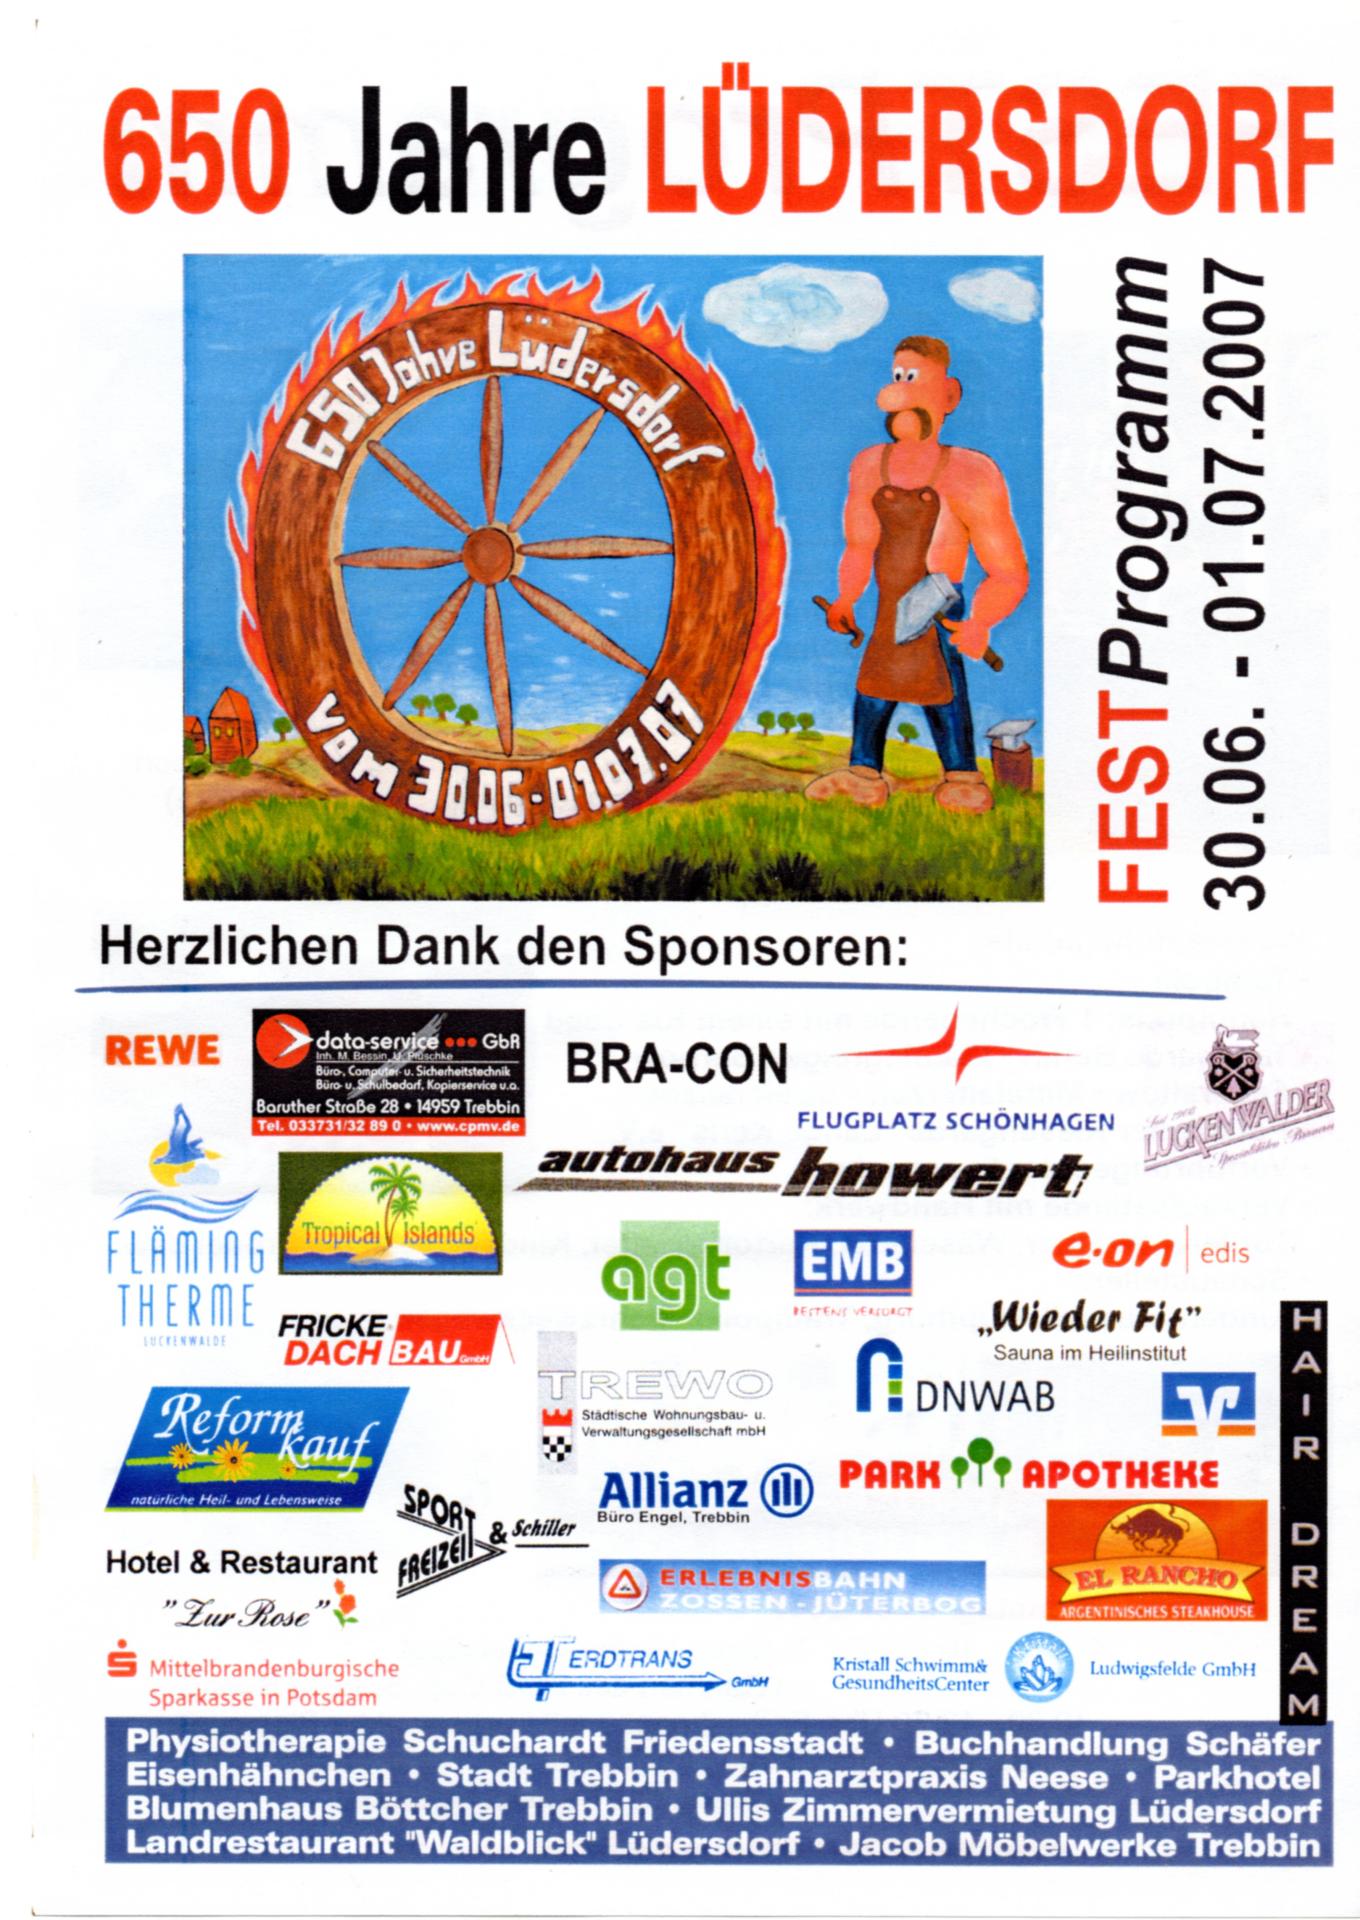 Festprogramm 650-Jahrfeier Lüdersdorf